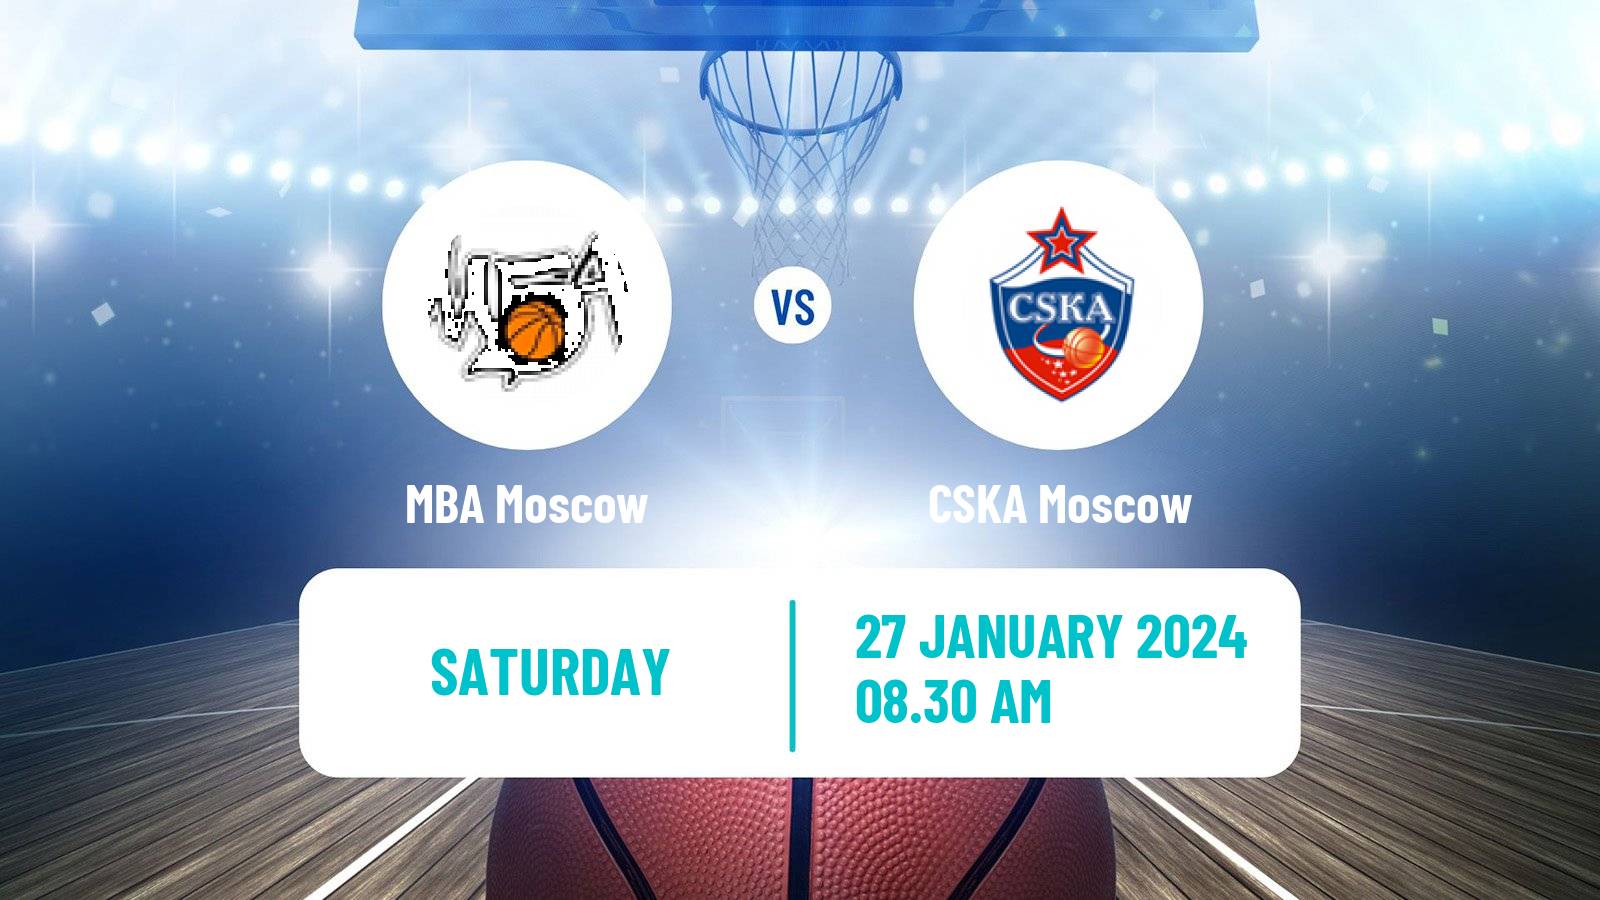 Basketball VTB United League MBA Moscow - CSKA Moscow